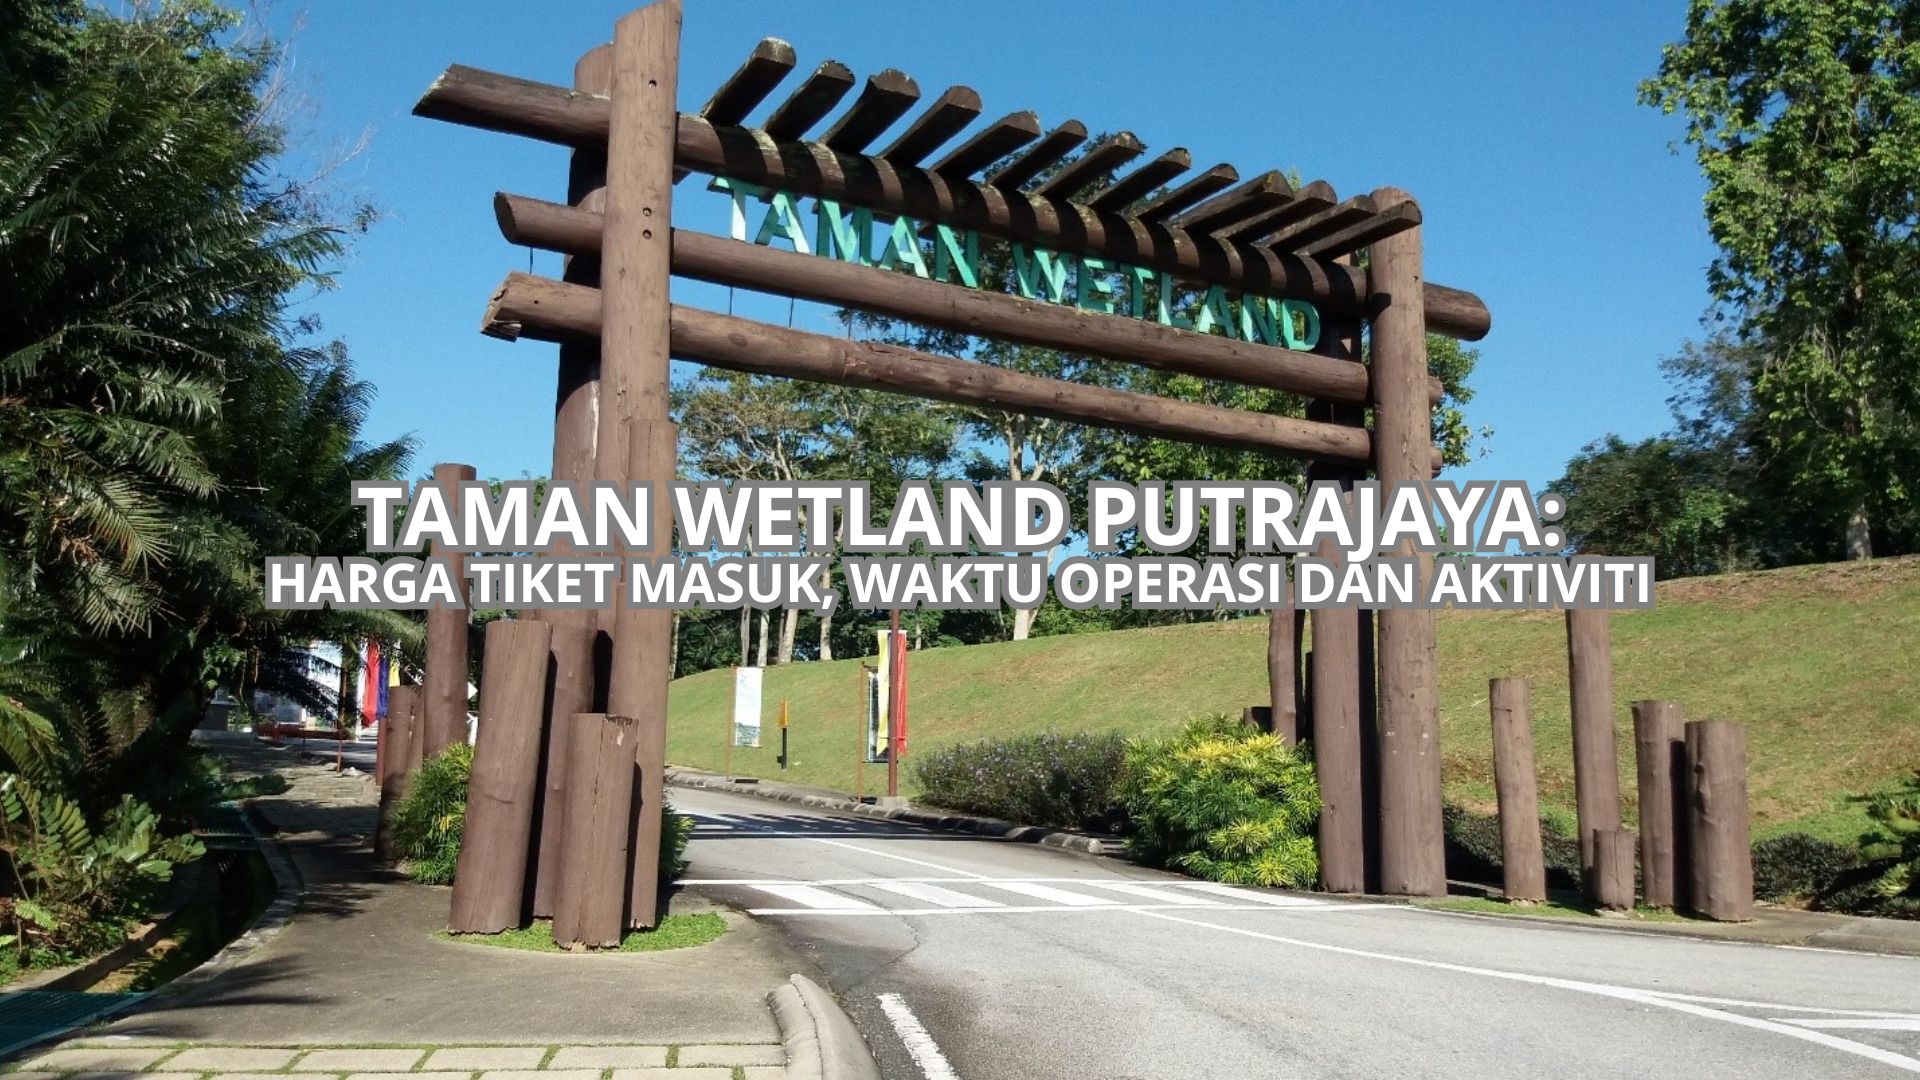 Taman Wetland Putrajaya Cover